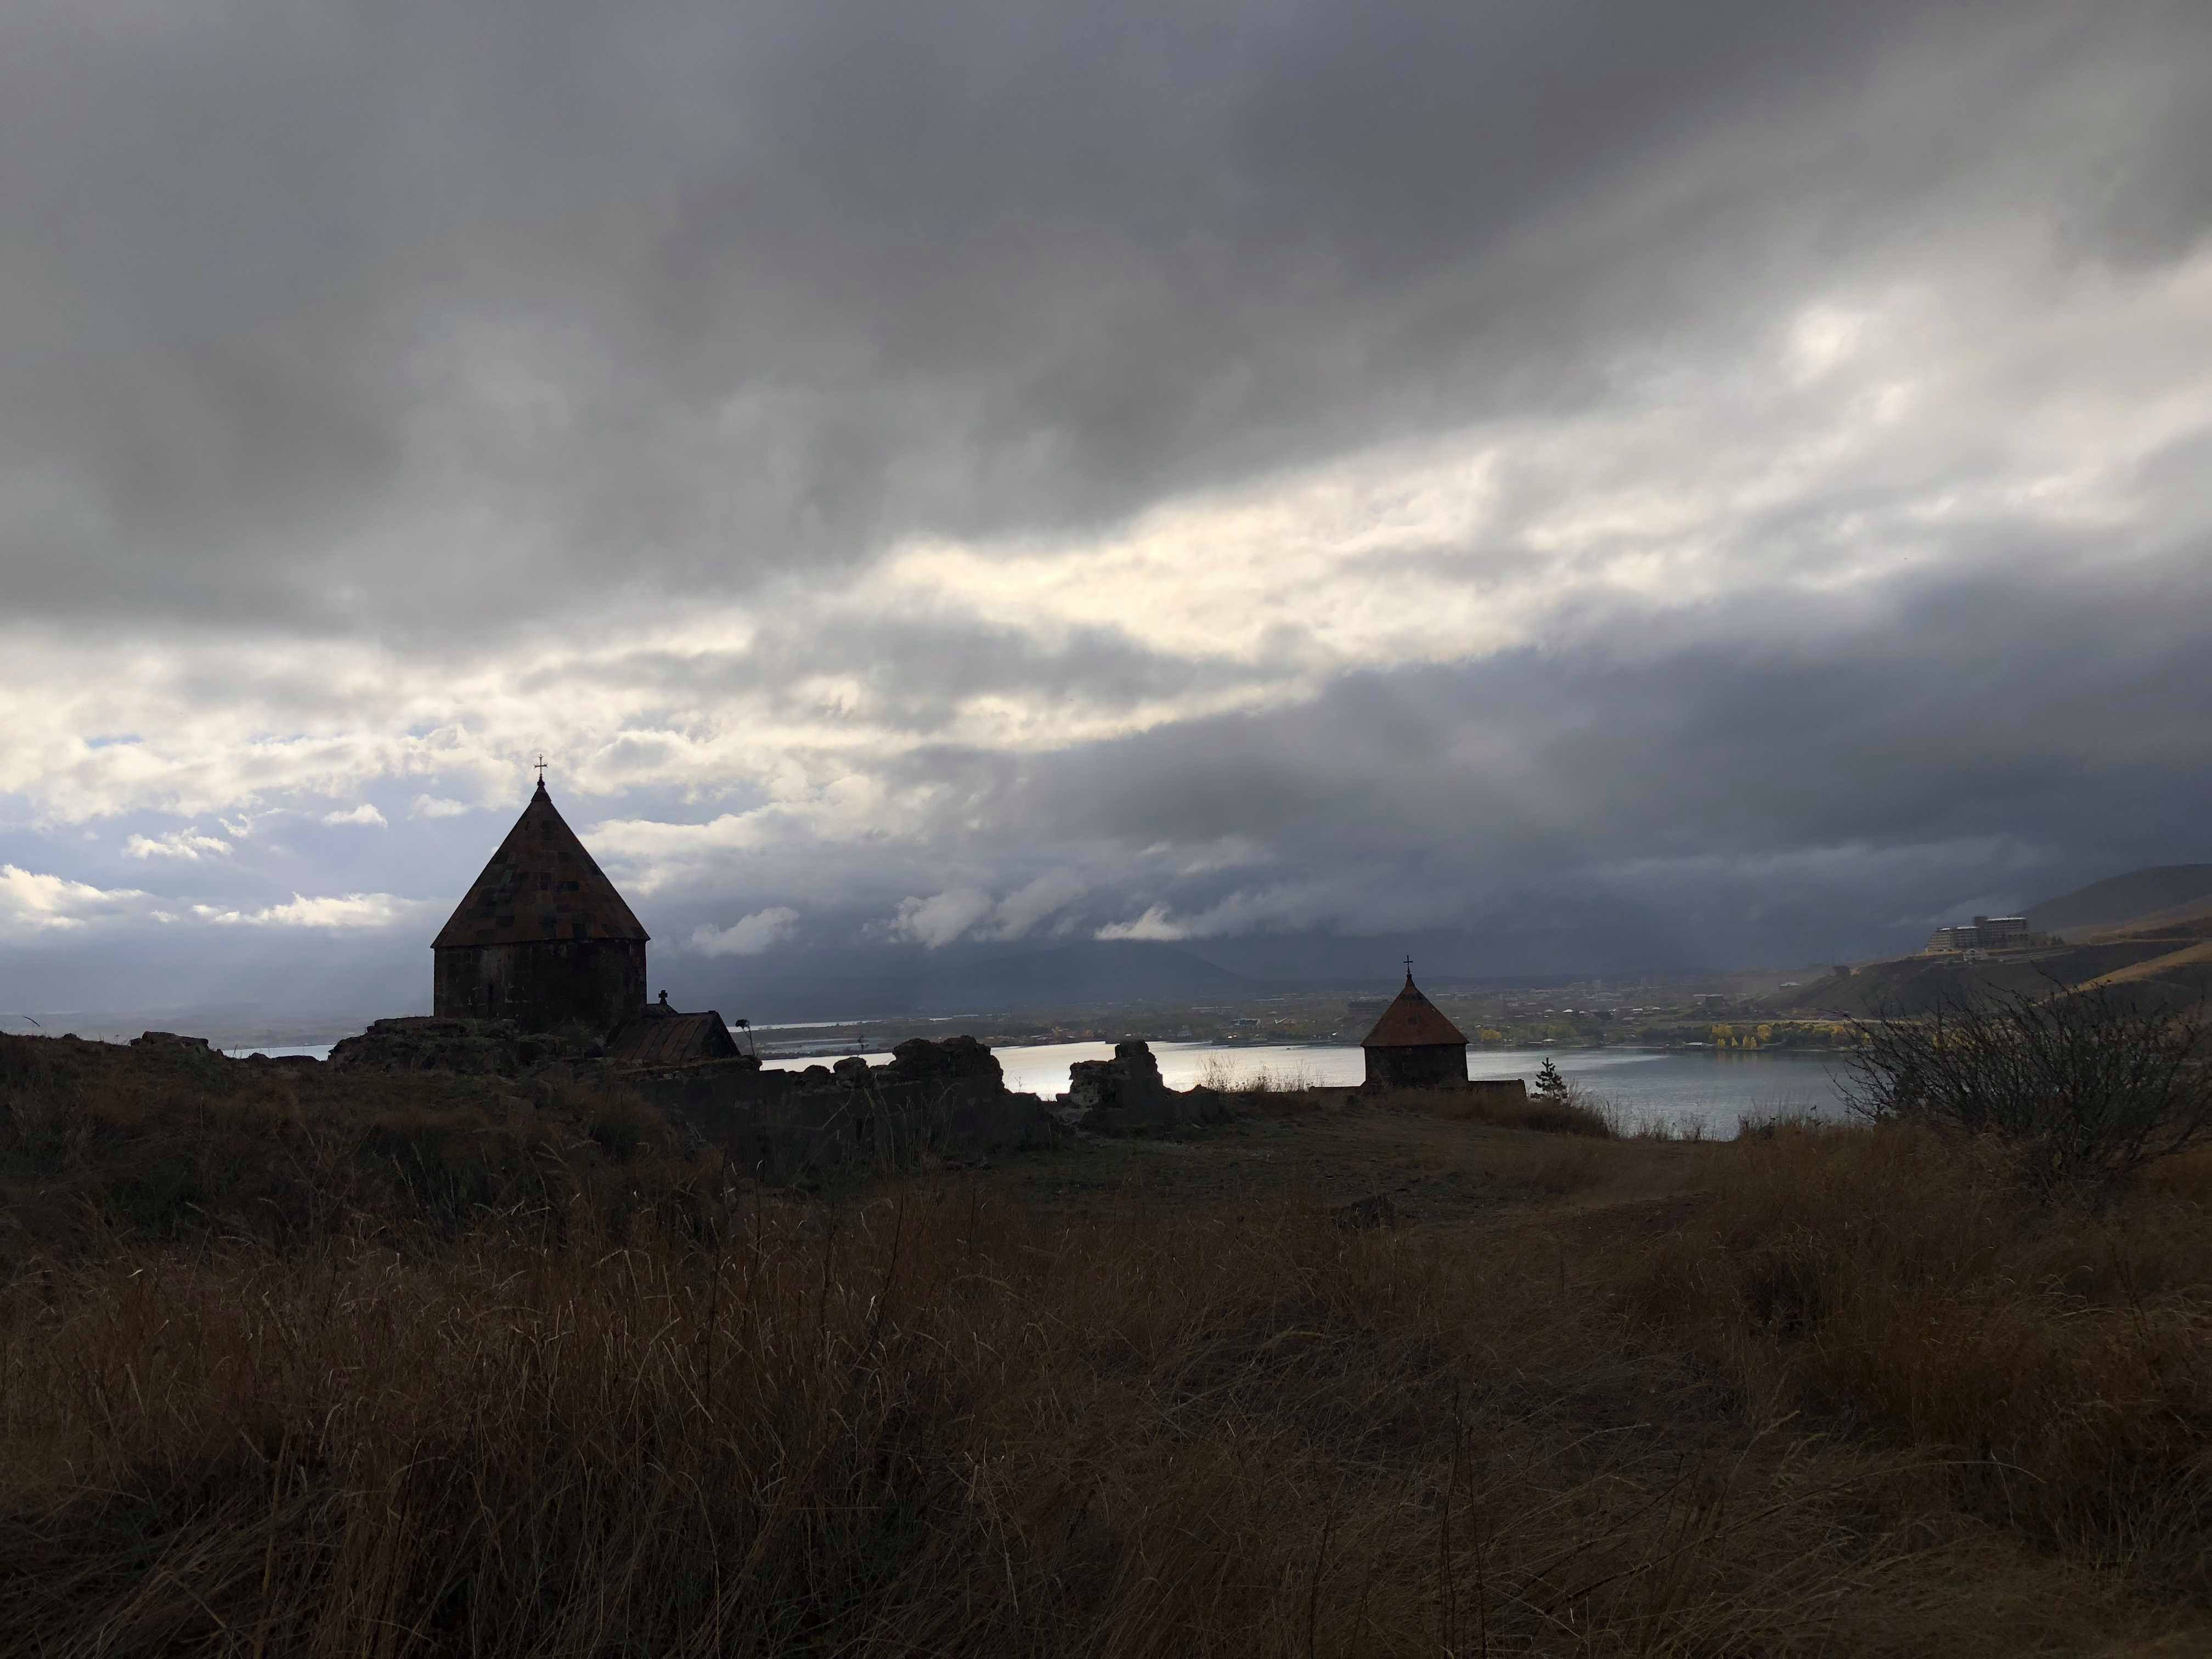 Sevanavank Monastery In Armenia...A Must See In The Caucasus